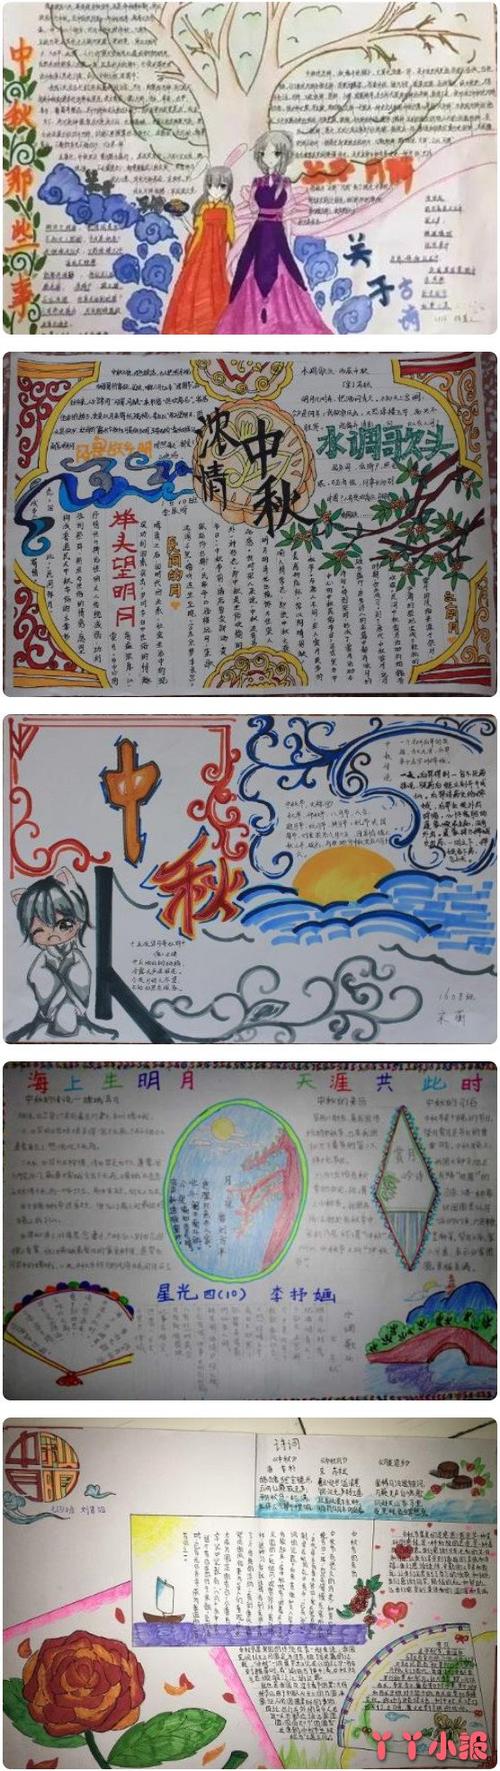 今天我们给大家带来了一张好看的中秋节的手抄报模板图喜欢的小朋友